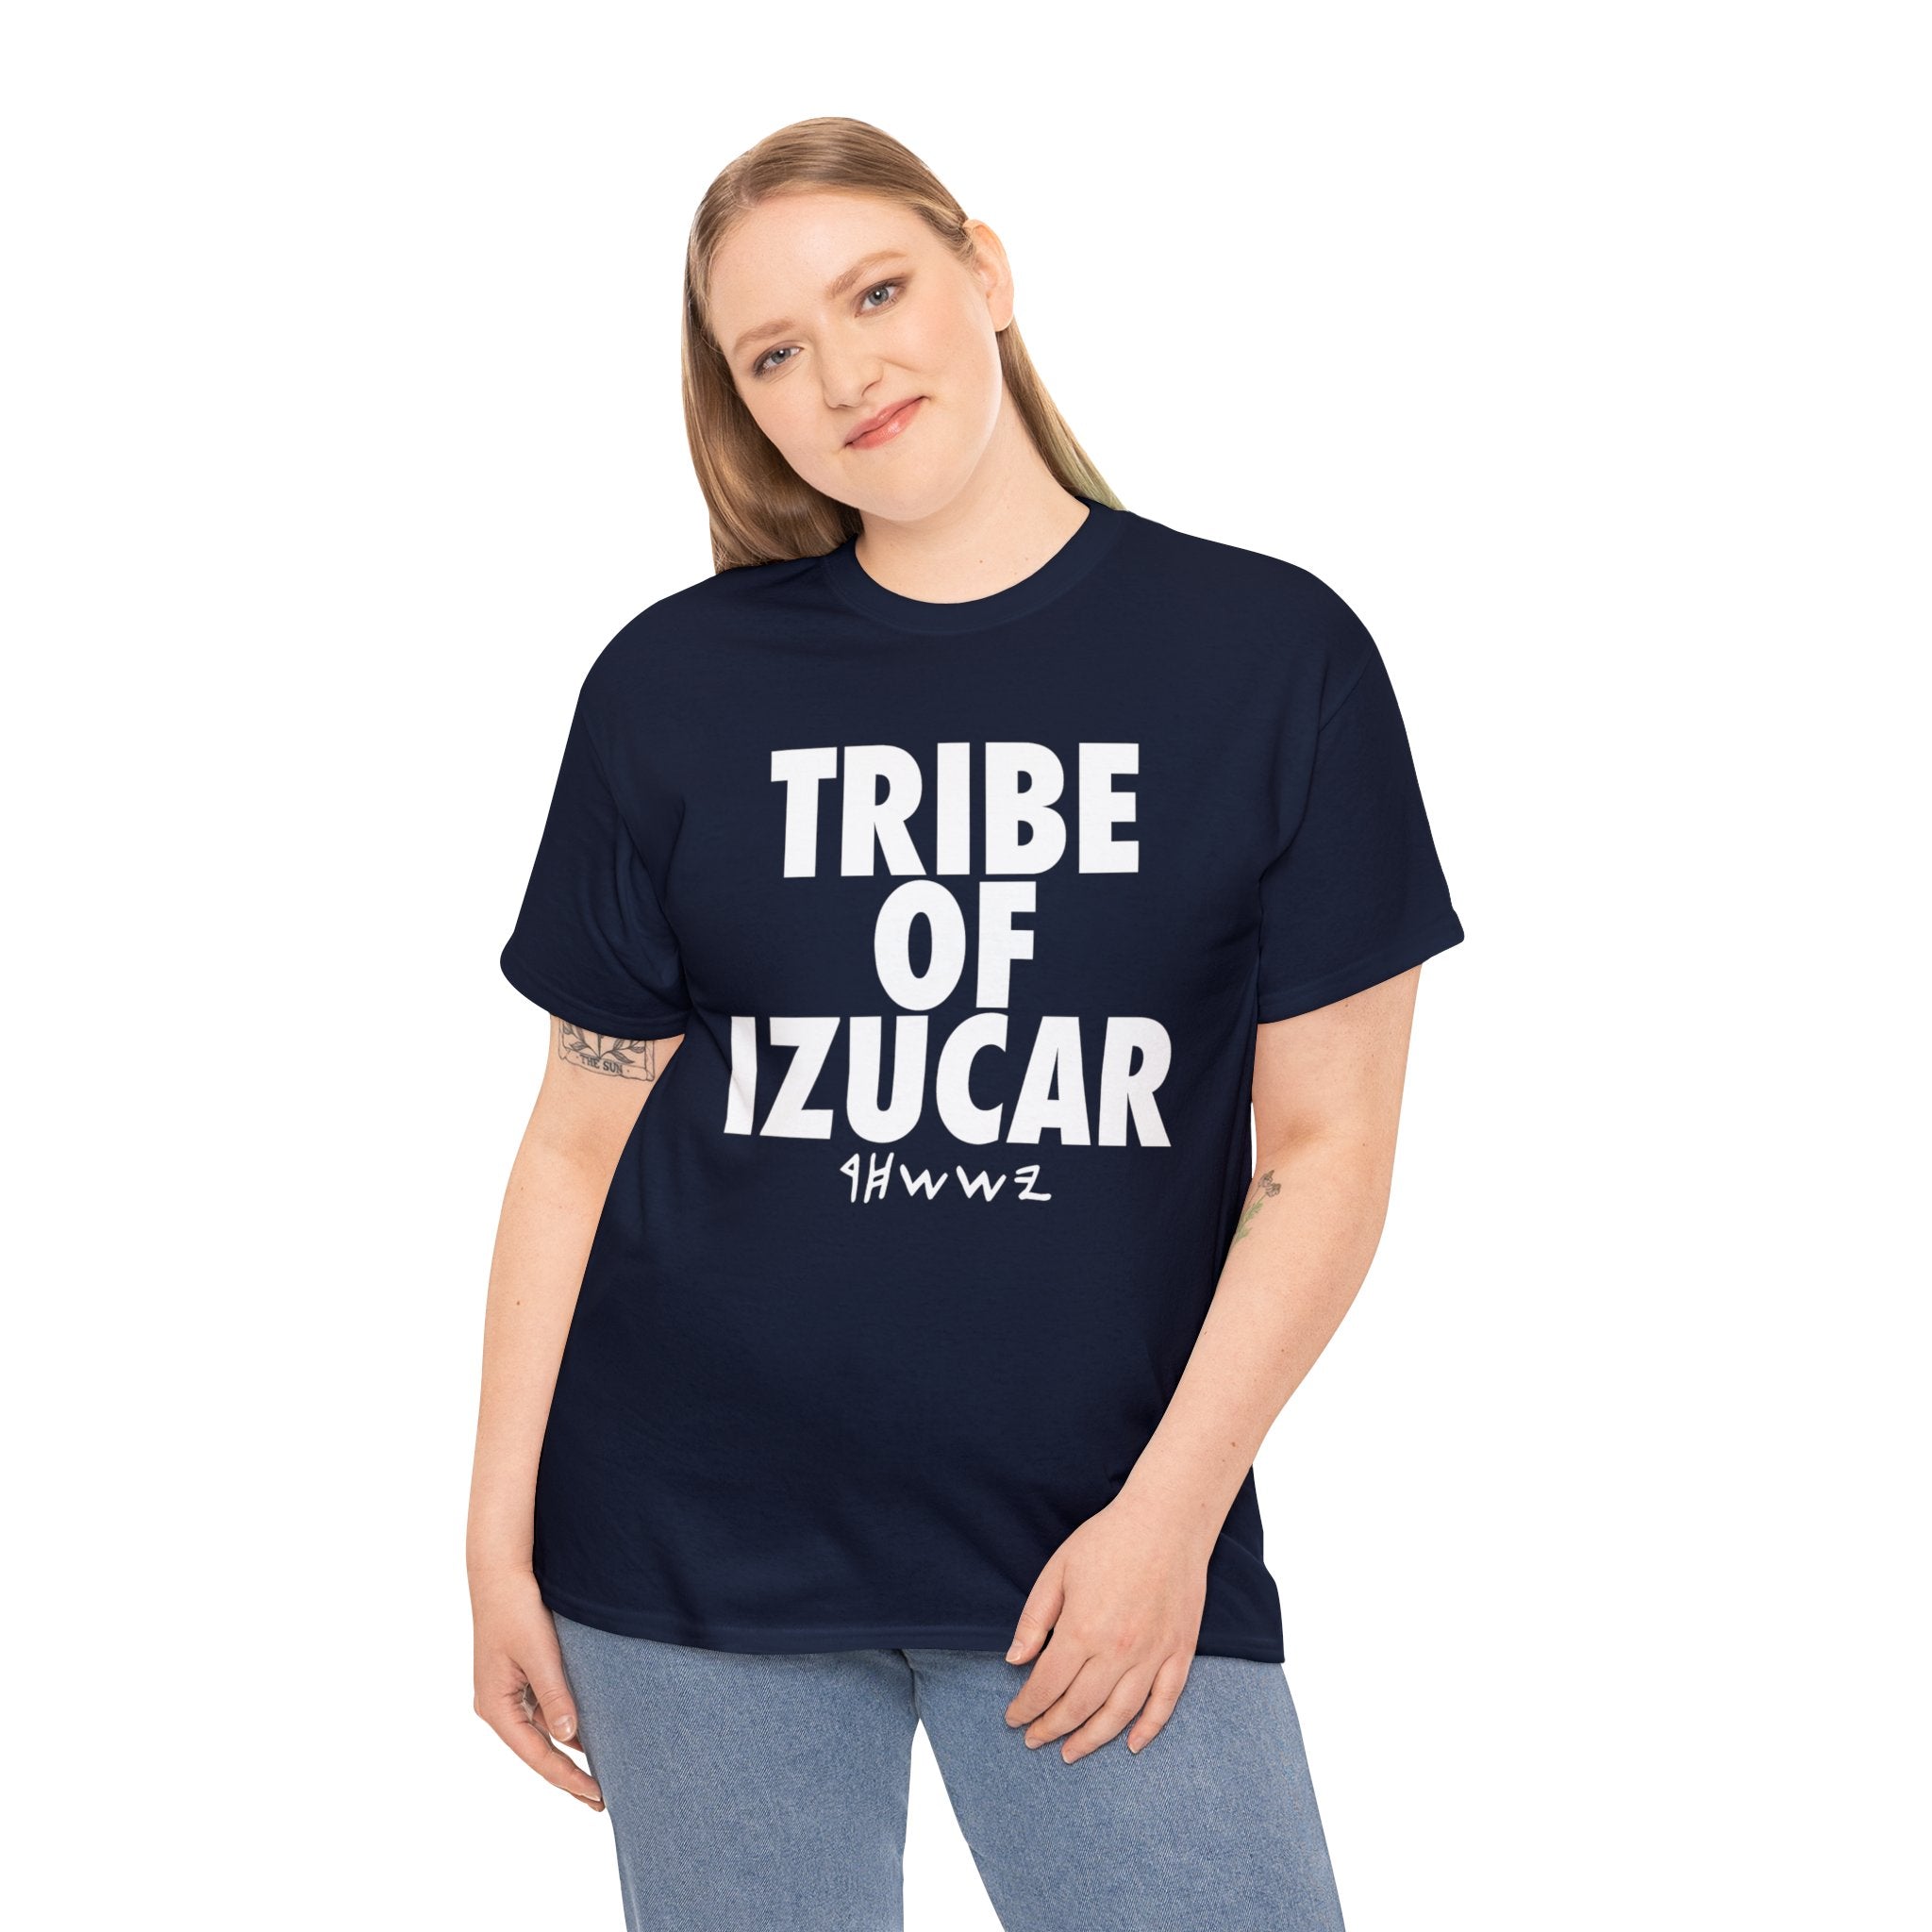 TRIBE OF IZUCAR(ISSACHAR) WHITE